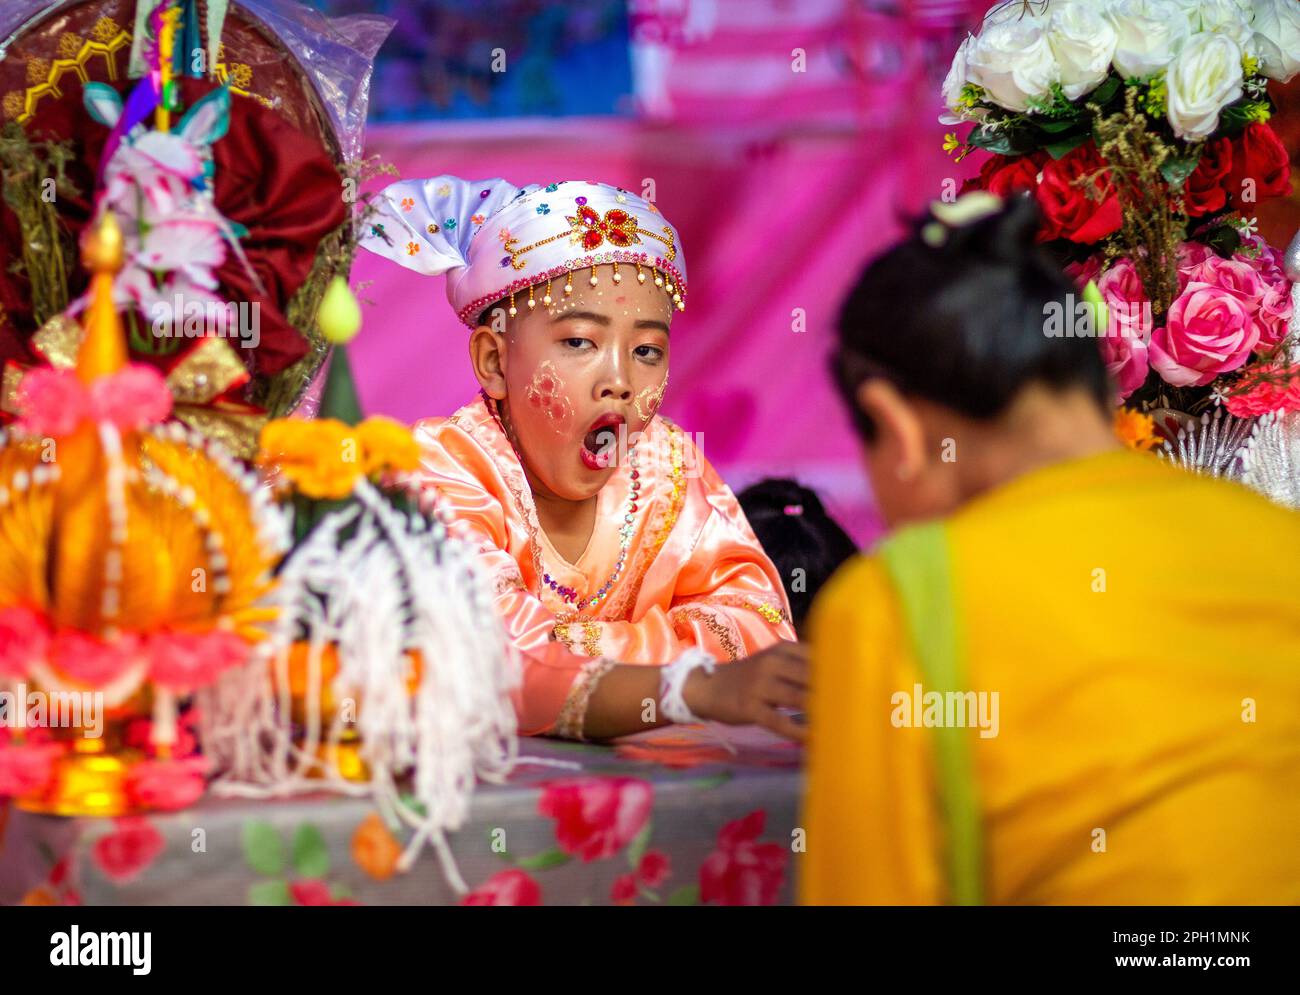 Un giovane ragazzo di etnia Shan vestito di costume colorato si sbadigia durante il festival POY Sang Long, una celebrazione di rito dell'ordinazione dei novizi buddisti al tempio di Wat Ku Tao. POY Sang Long è una cerimonia di ordinazione dei novizi buddisti tra il popolo Shan chiamato anche tribale Tai Yai in Myanmar e nella parte settentrionale della Thailandia, ma a differenza di qualsiasi altra cerimonia del suo tipo nel paese. I ragazzi di età compresa tra i sette e i 14 anni, noti come "figli di Cristallo", saranno ordinati novizi per imparare le dottrine buddiste per guadagnare meriti ai loro genitori e alle loro famiglie. (Foto di Pongmanat Tasiri/SOPA Images/Sipa USA) Foto Stock